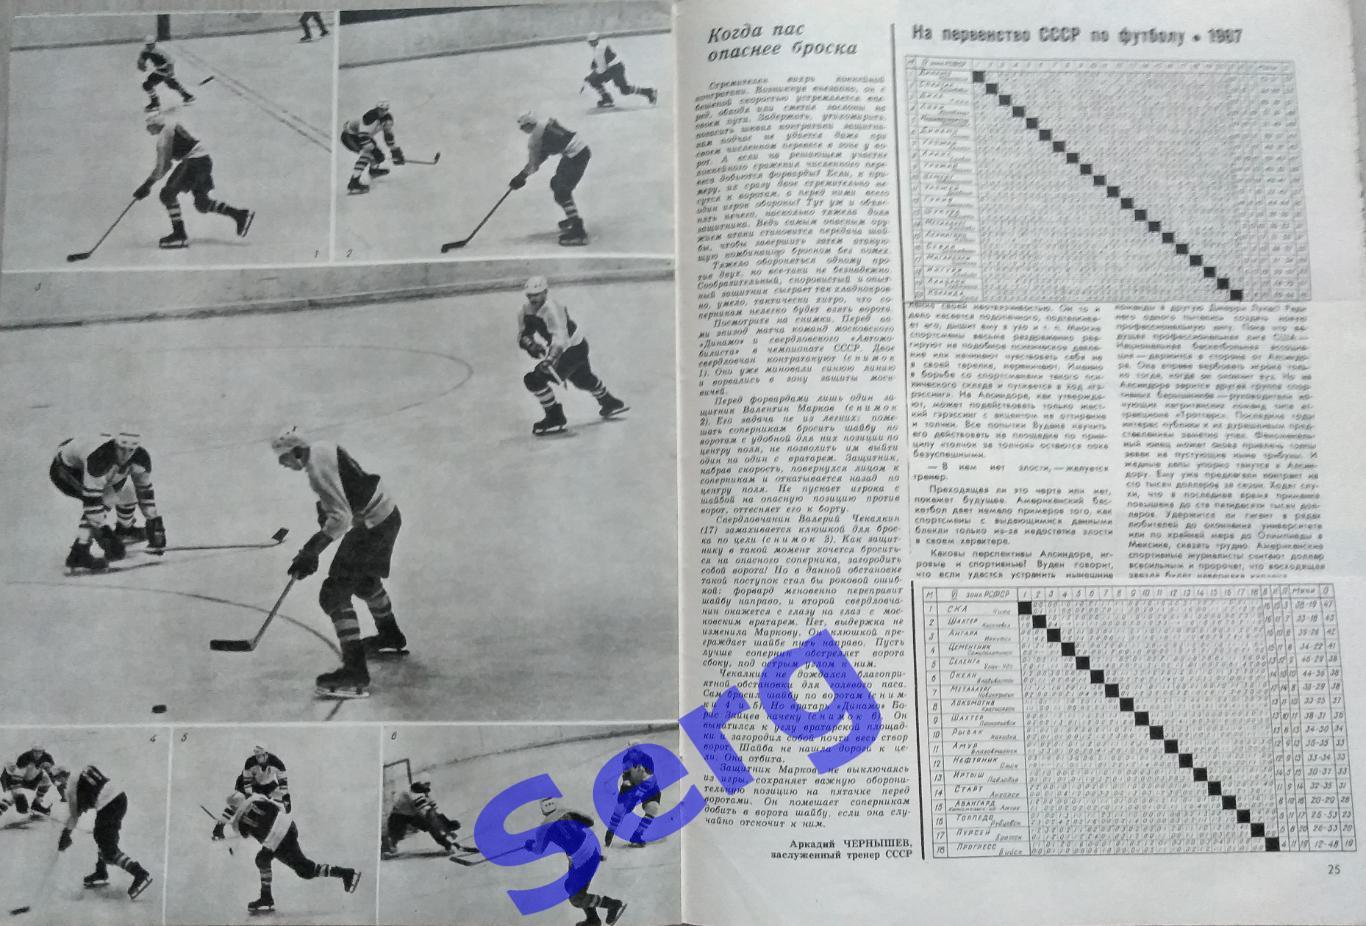 Журнал Спортивные игры №1 1968 год 6